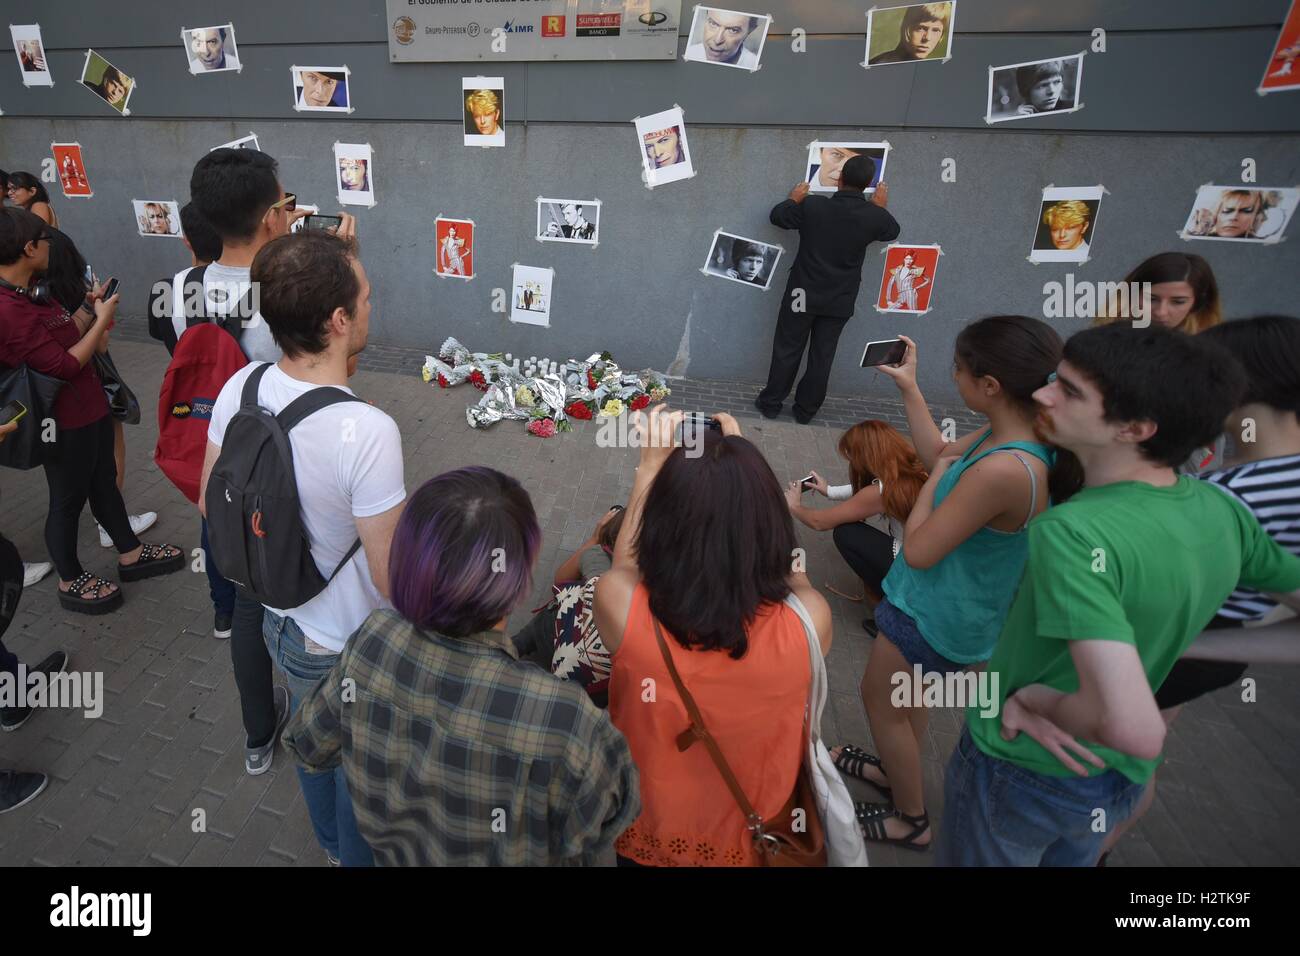 Buenos Aires, Argentina. 13 gen, 2016. Le persone si radunano davanti a uno schermo gigante durante una proiezione di David Bowie video. Foto Stock